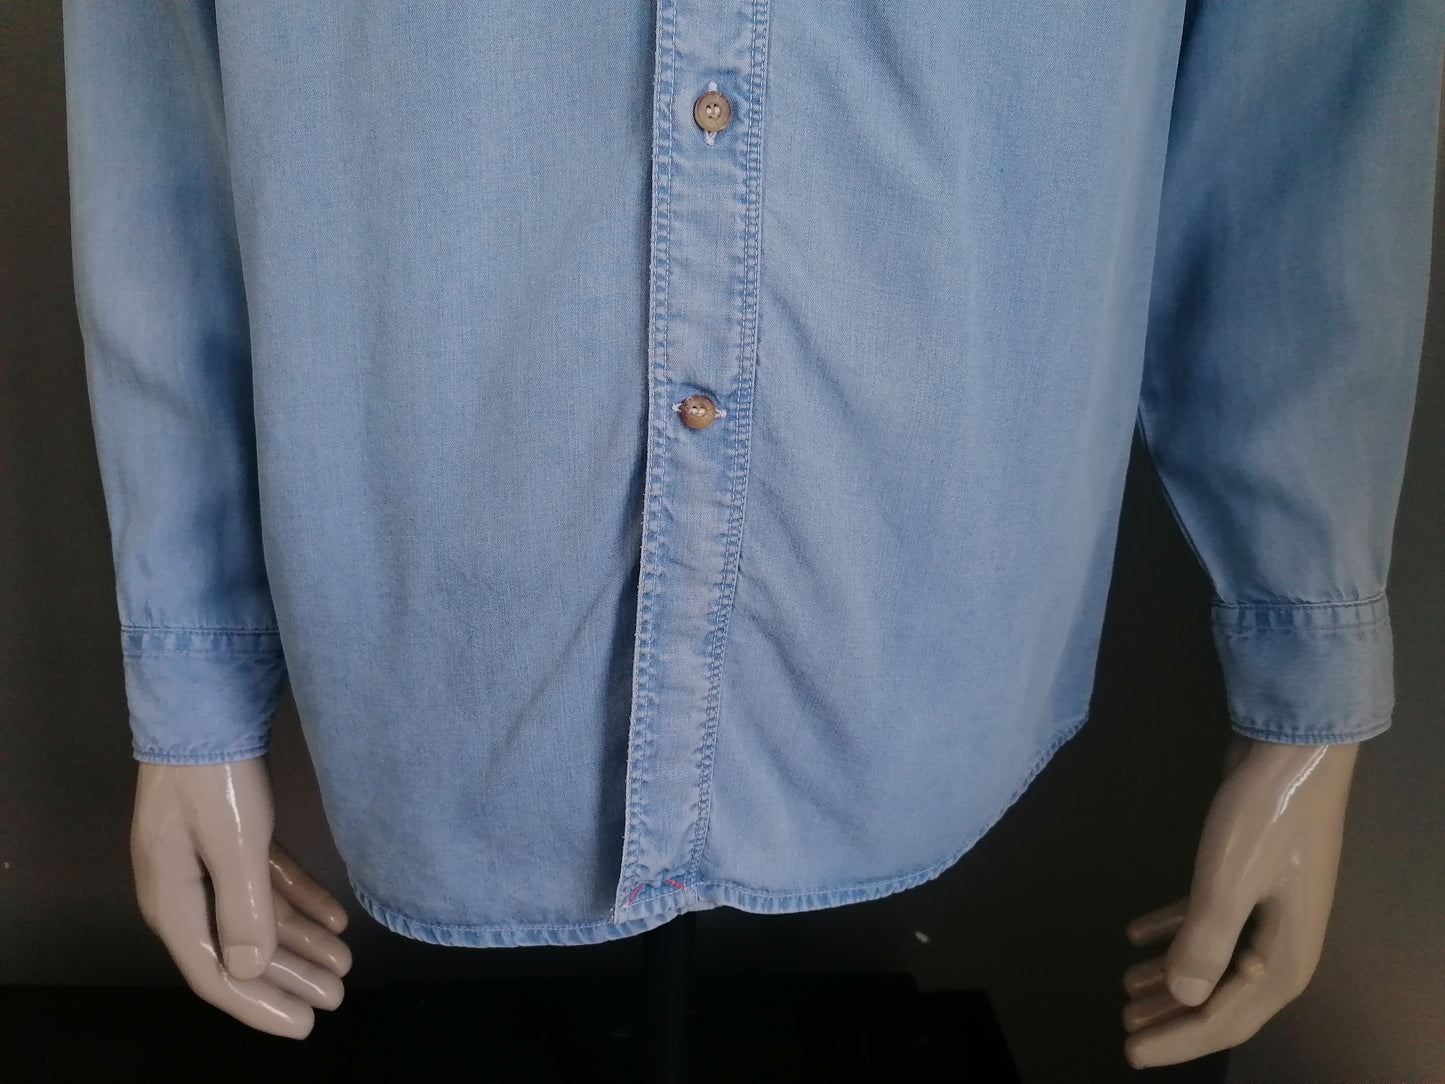 B Auswahl: Vintage Joop Jeans -Shirt. Hellblau. Größe S (übergroß). Kleiner Punkt zurück.